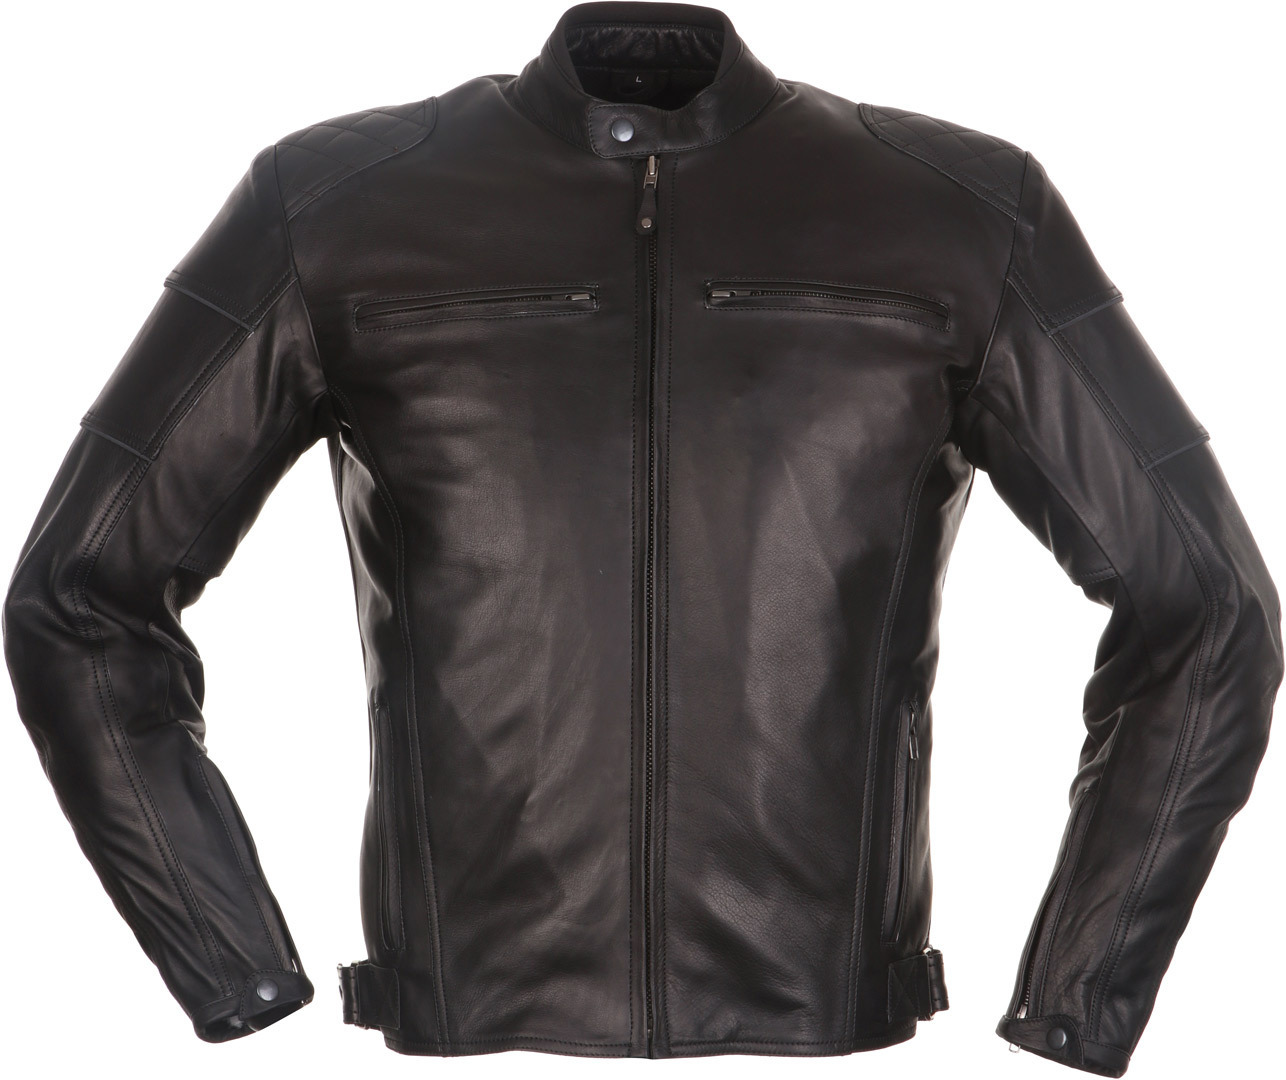 Modeka Ruven Motorrad Lederjacke, schwarz, Größe 4XL, schwarz, Größe 4XL